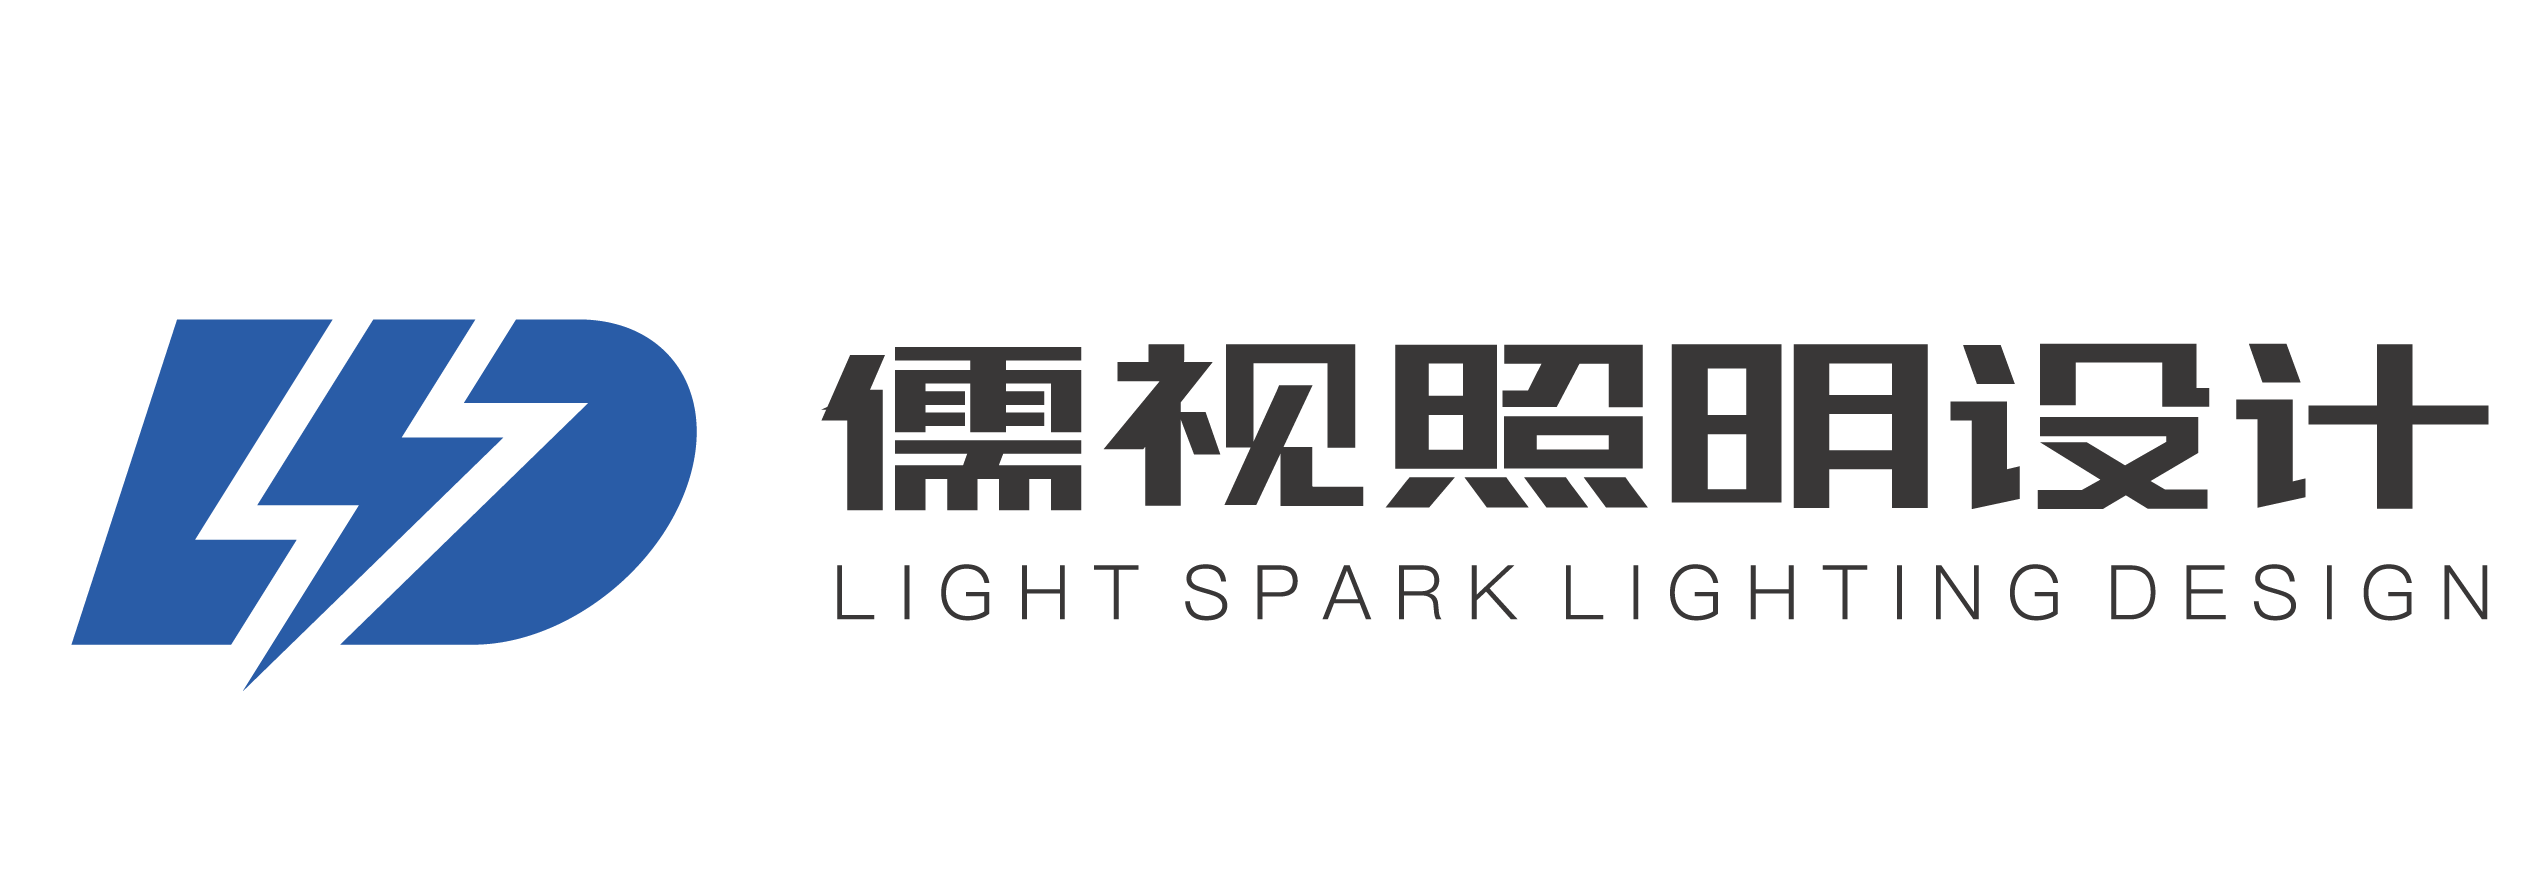 儒视照明设计(上海)有限公司-儒视照明设计(上海)有限公司-